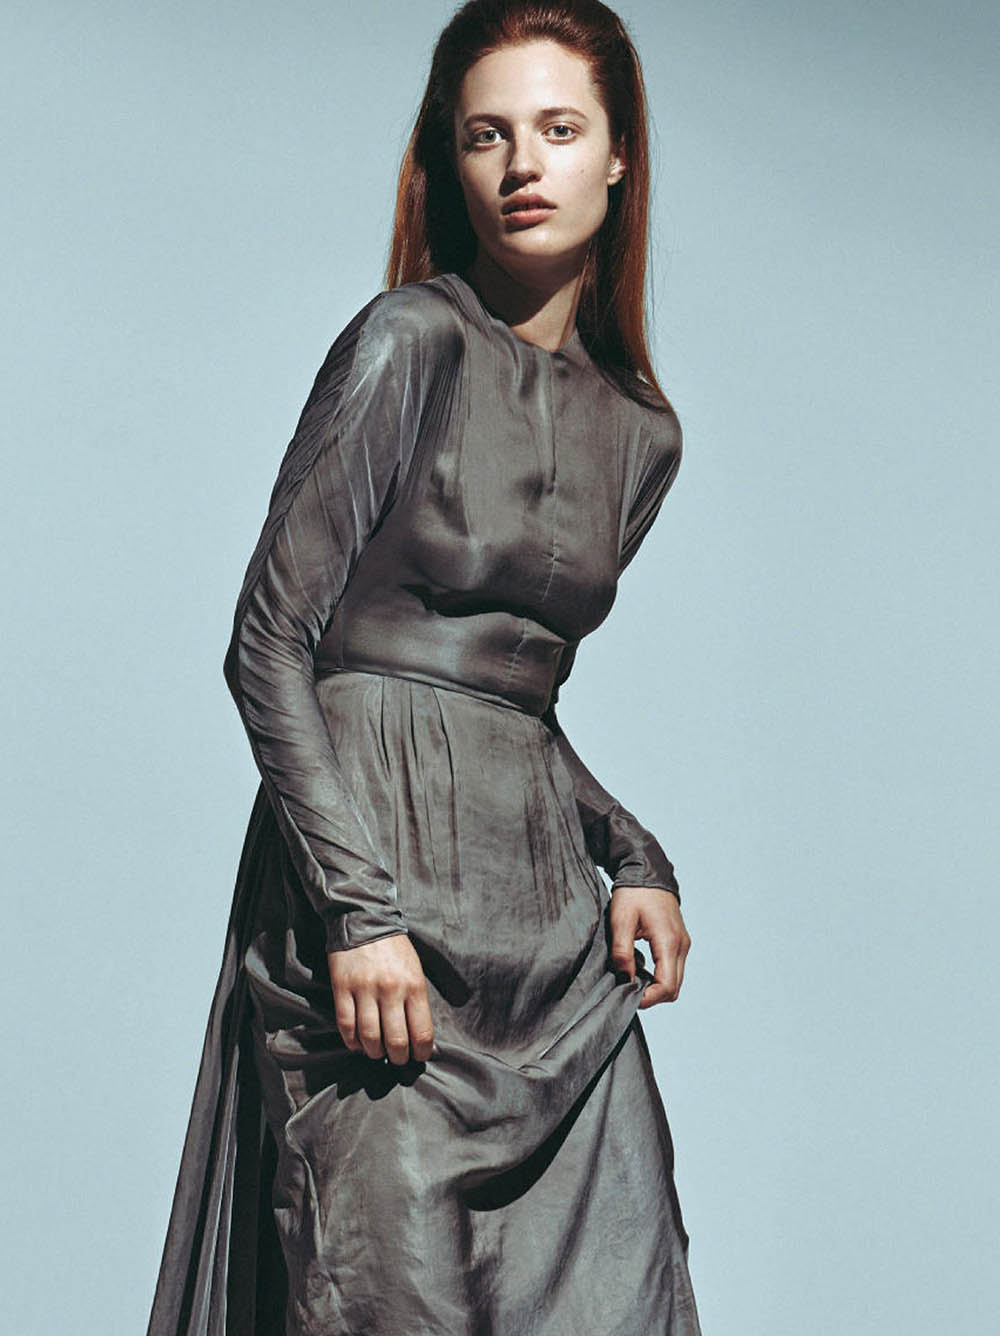 Julia Banas by Ferry van der Nat for Vogue Netherlands October 2019